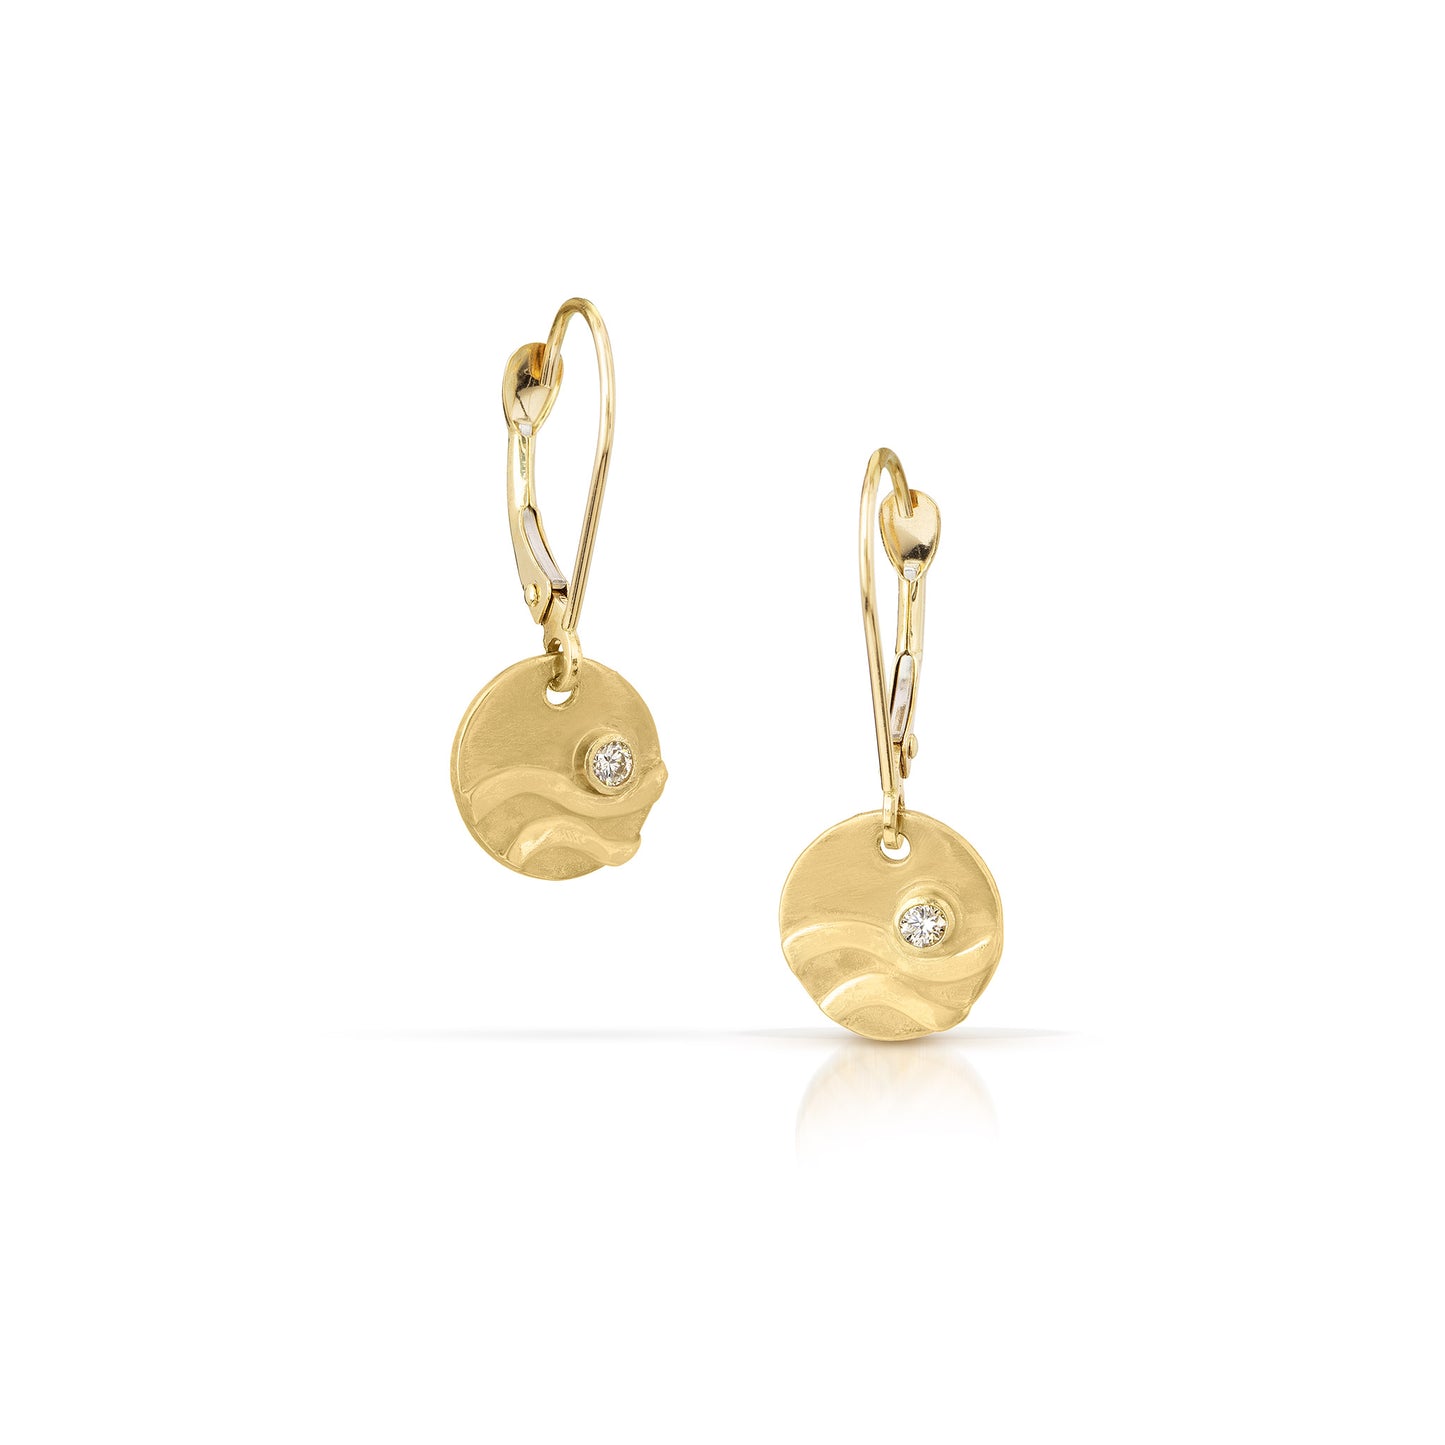 14K gold wave charm earrings by Jen Lesea Designs